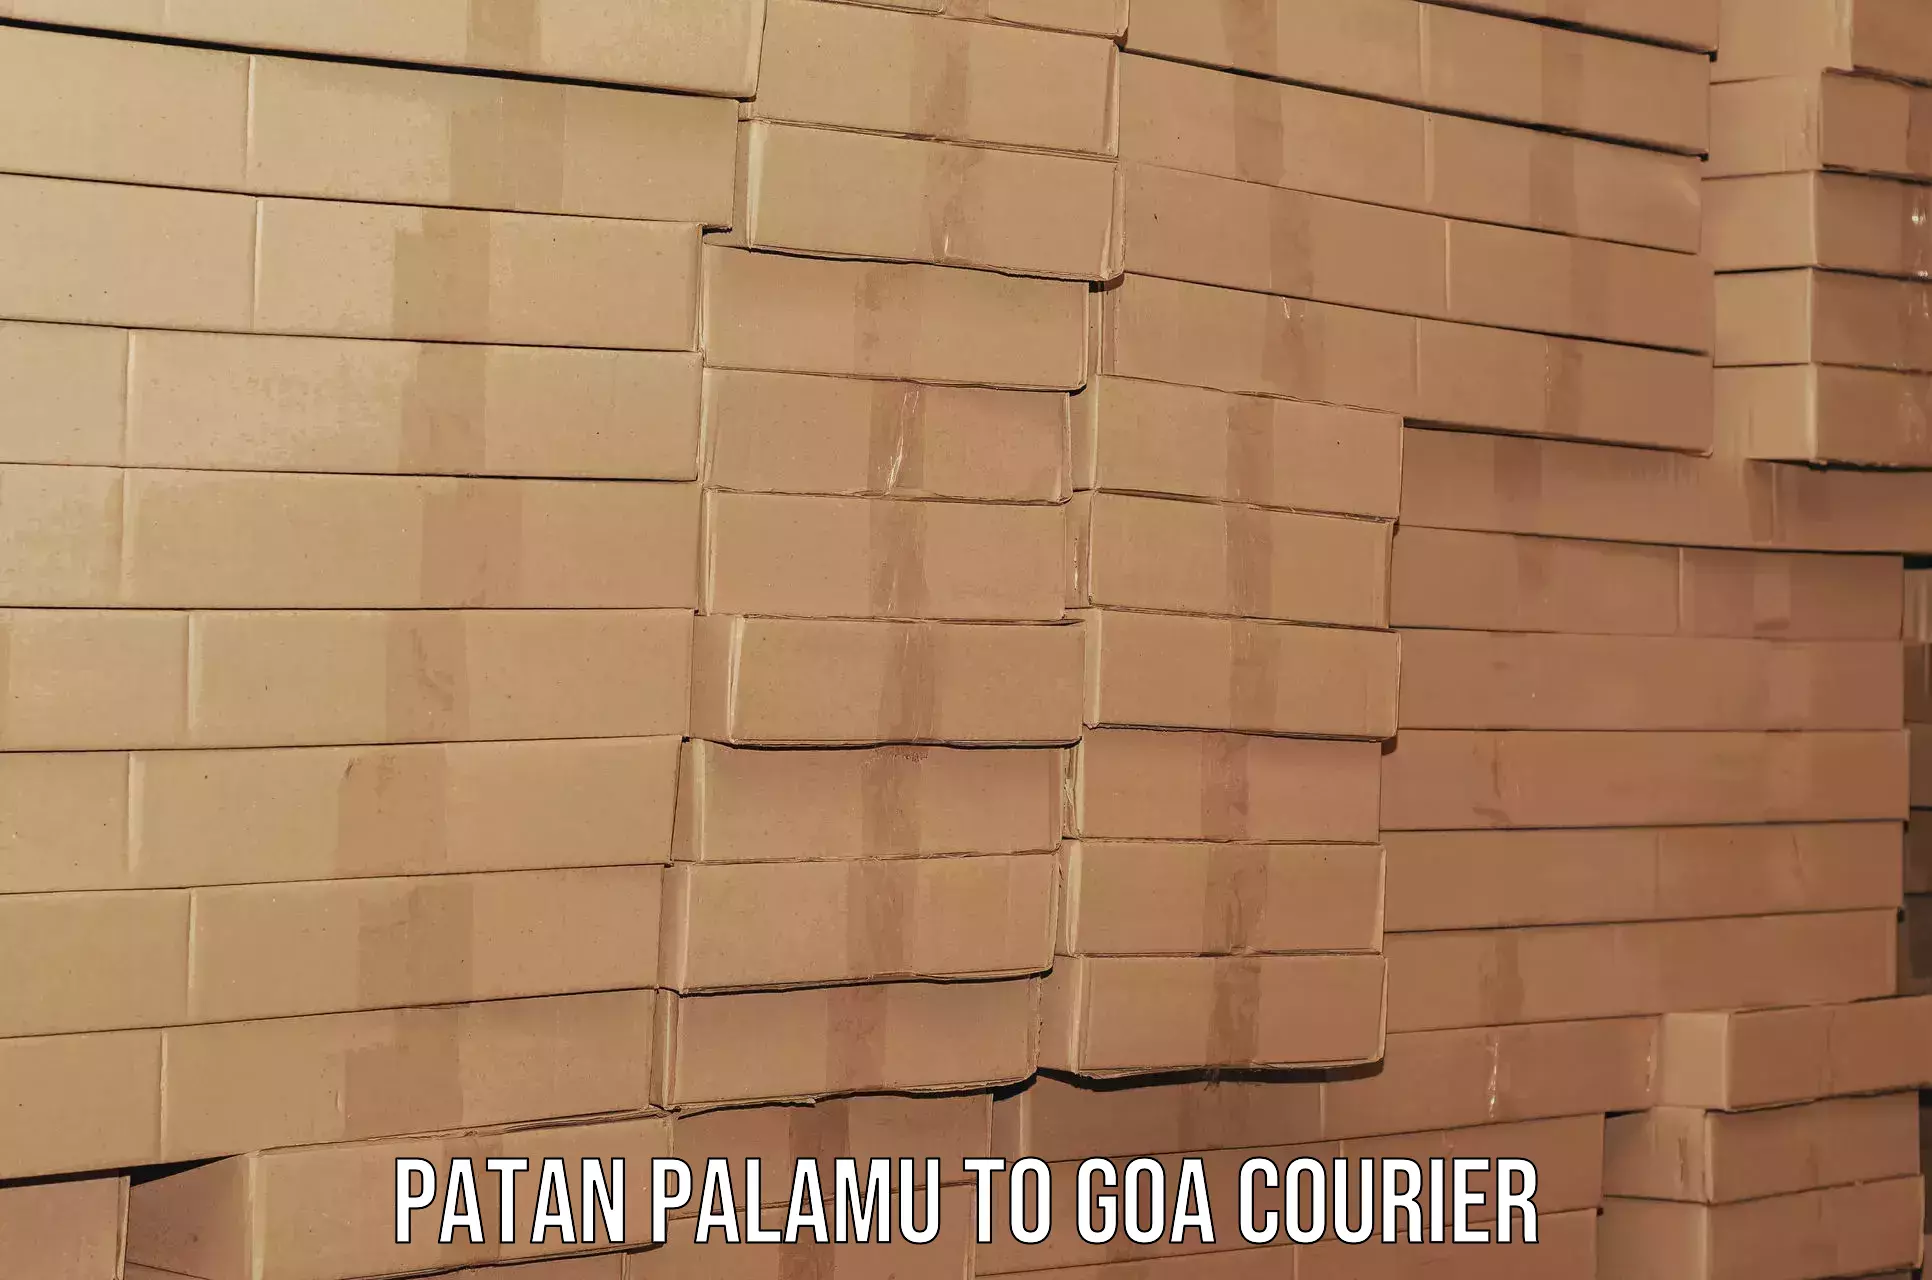 Furniture moving plans Patan Palamu to Panjim